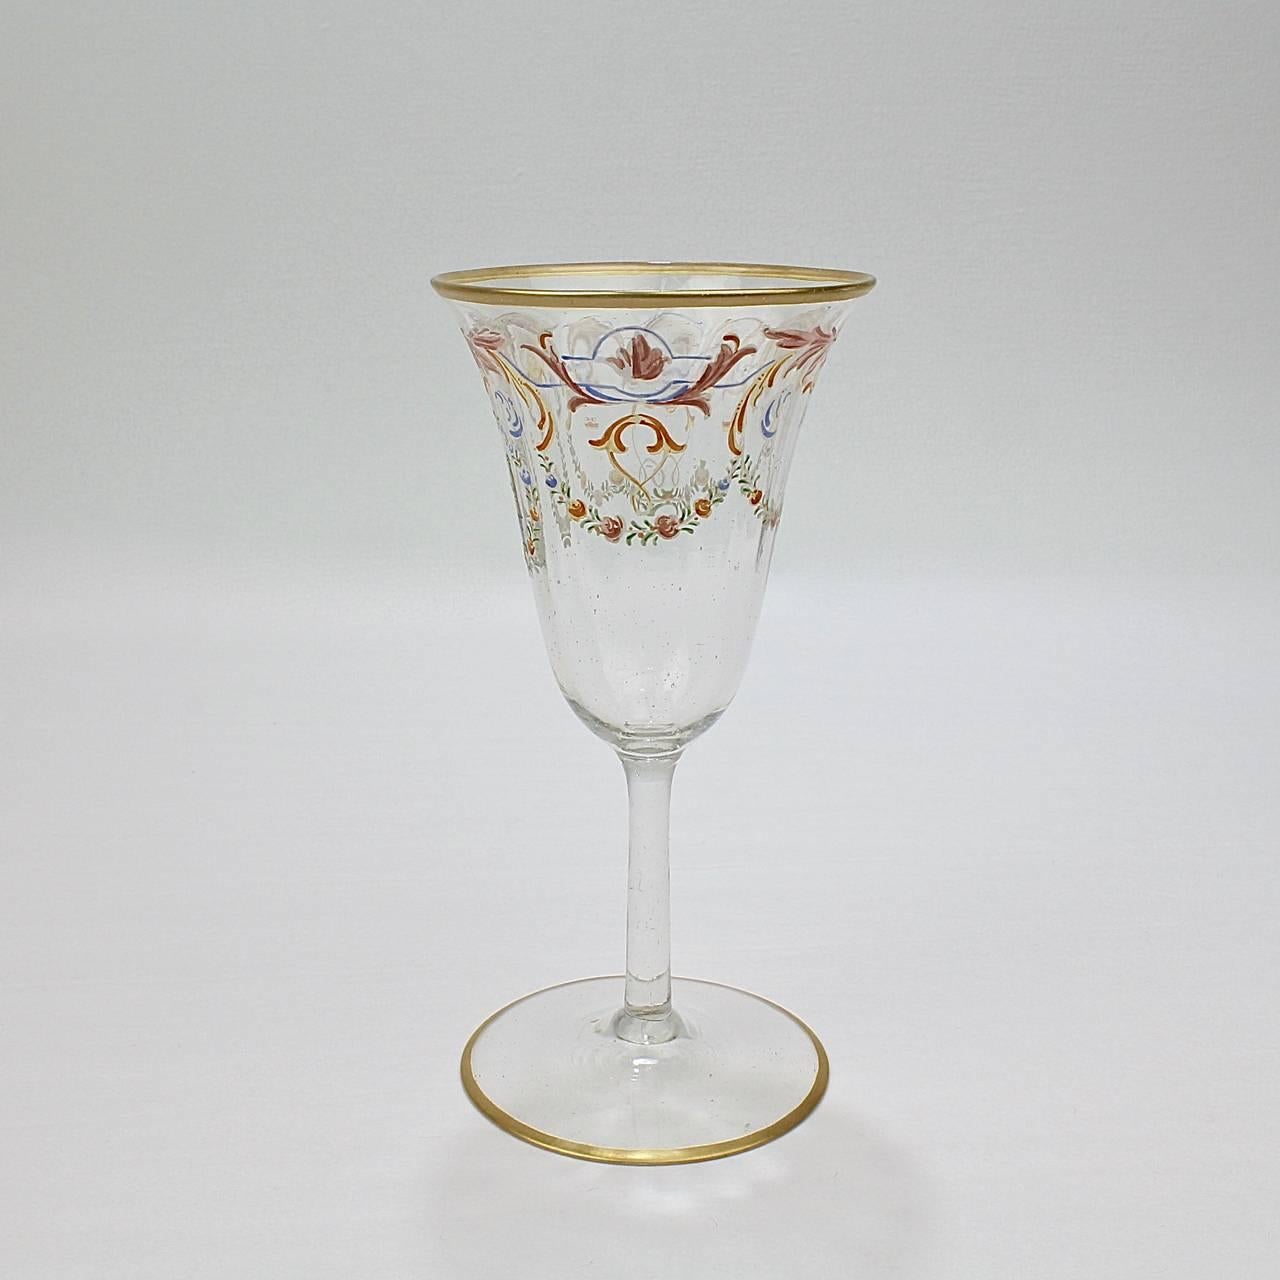 Italian Set of 12 Enameled Venetian Glass White Wine Stems or Glasses, 1930s